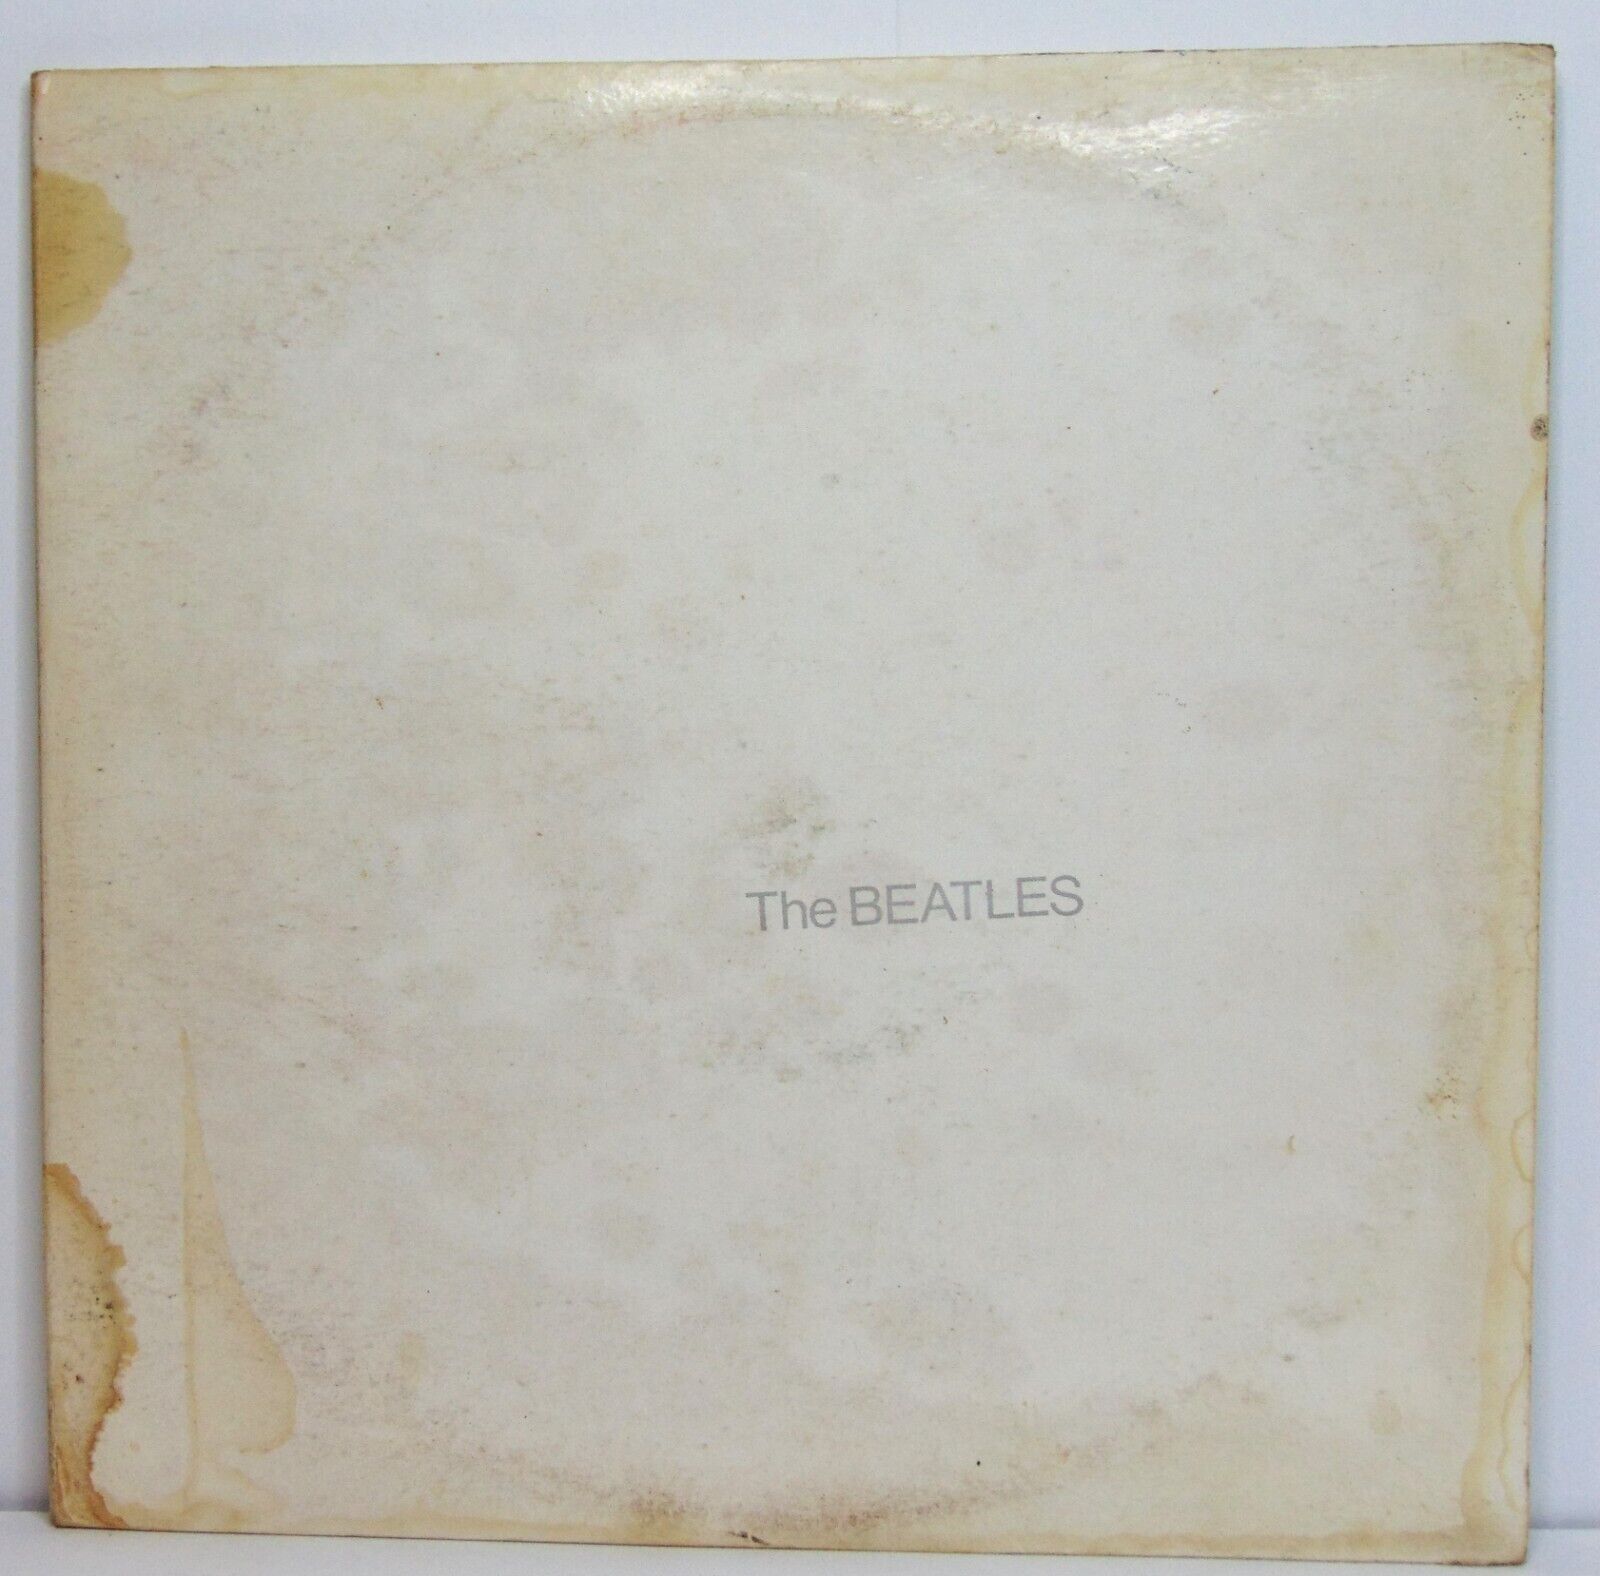 The Beatles - The Beatles (White Album) 1968 Capitol DBL Rock Vinyl LP  VG++/VG